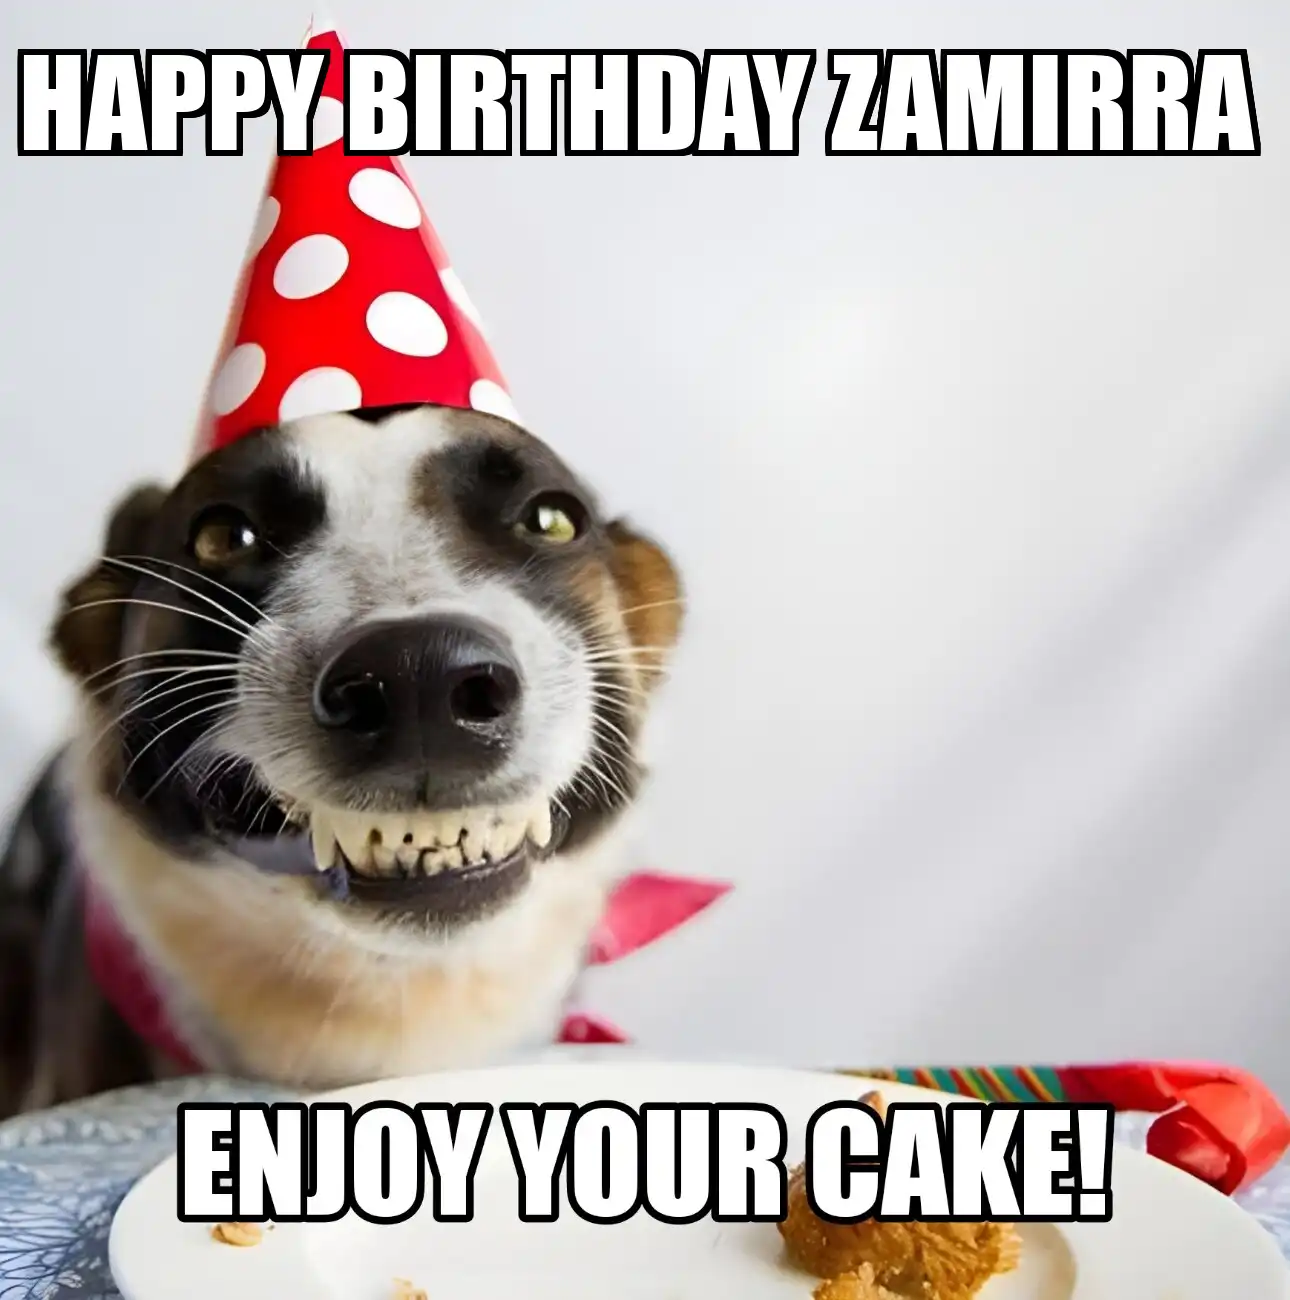 Happy Birthday Zamirra Enjoy Your Cake Dog Meme